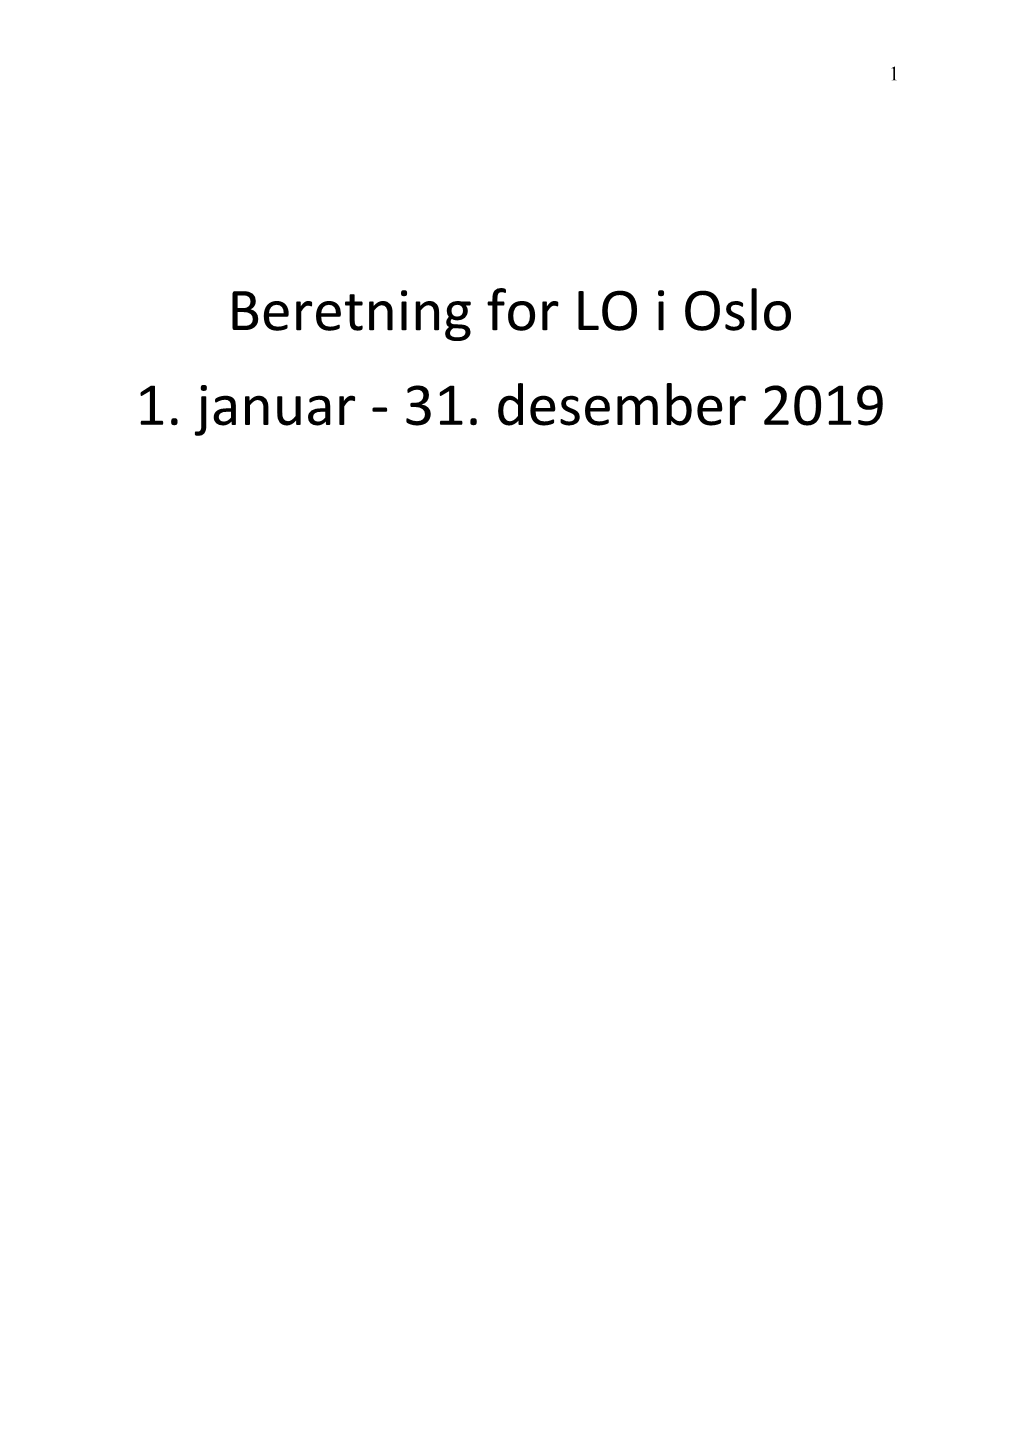 Beretning for LO I Oslo 1. Januar - 31